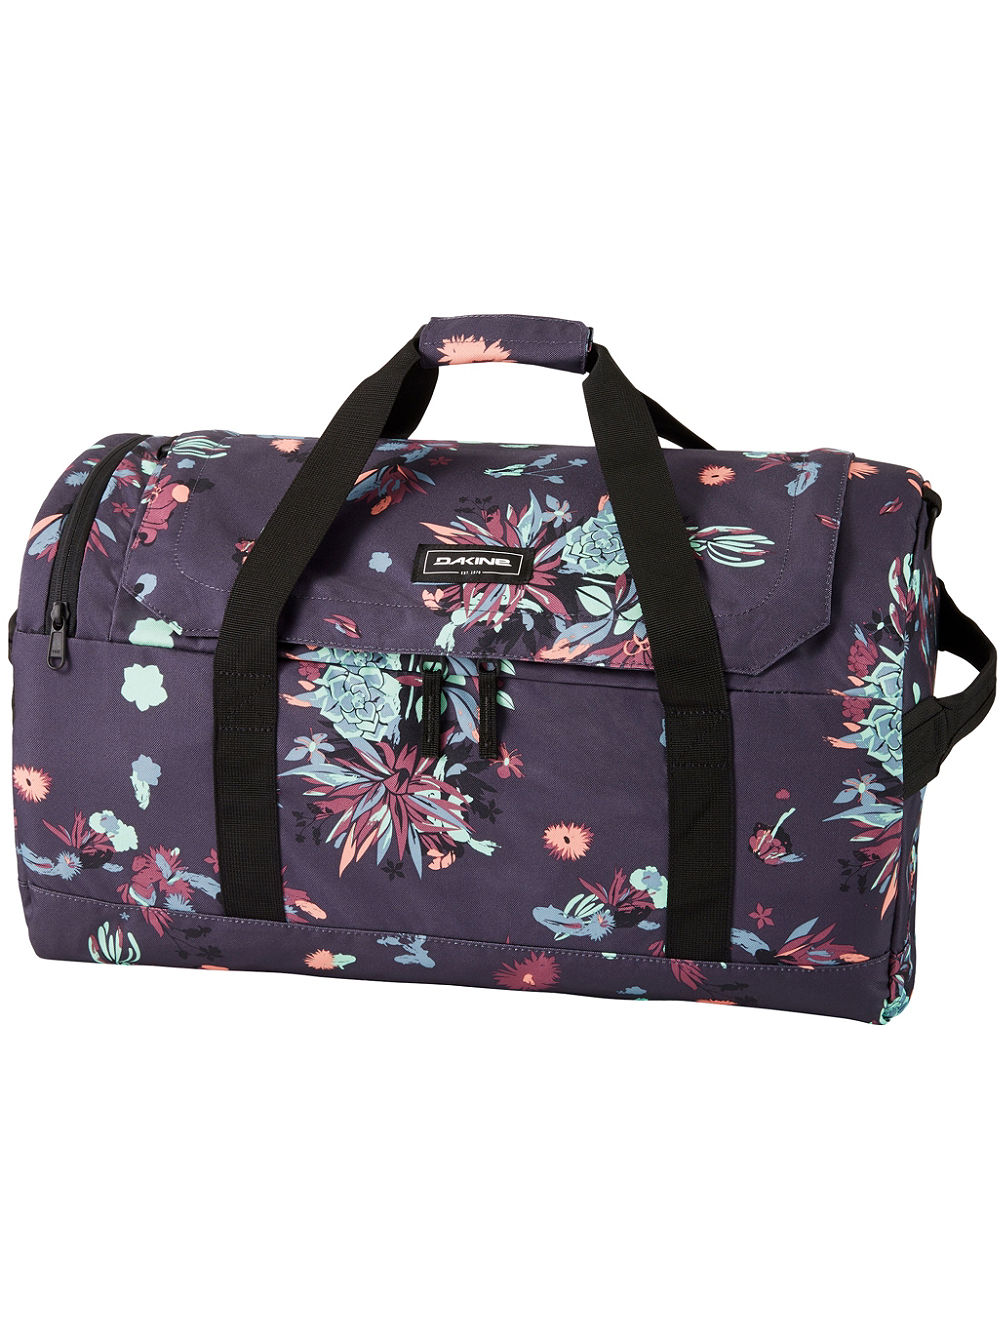 EQ Duffle 50L Travel Bag